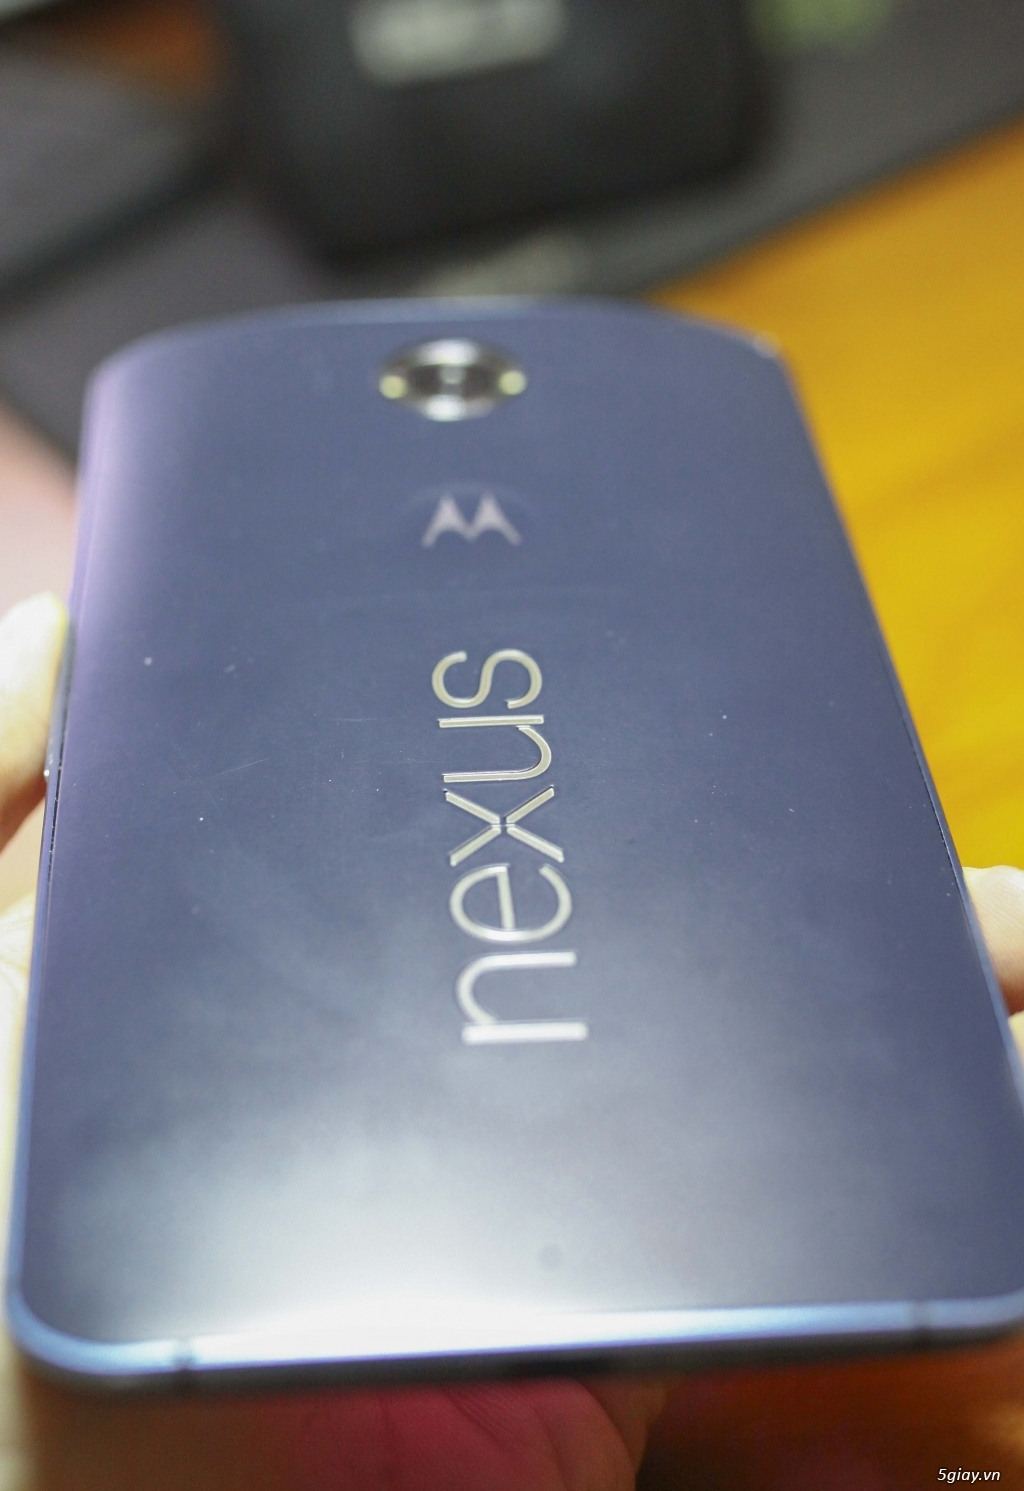 Thanh lý Google Nexus 6 hàng cực độc 32GB|3GB|Snap 805|Màn 2k - 4